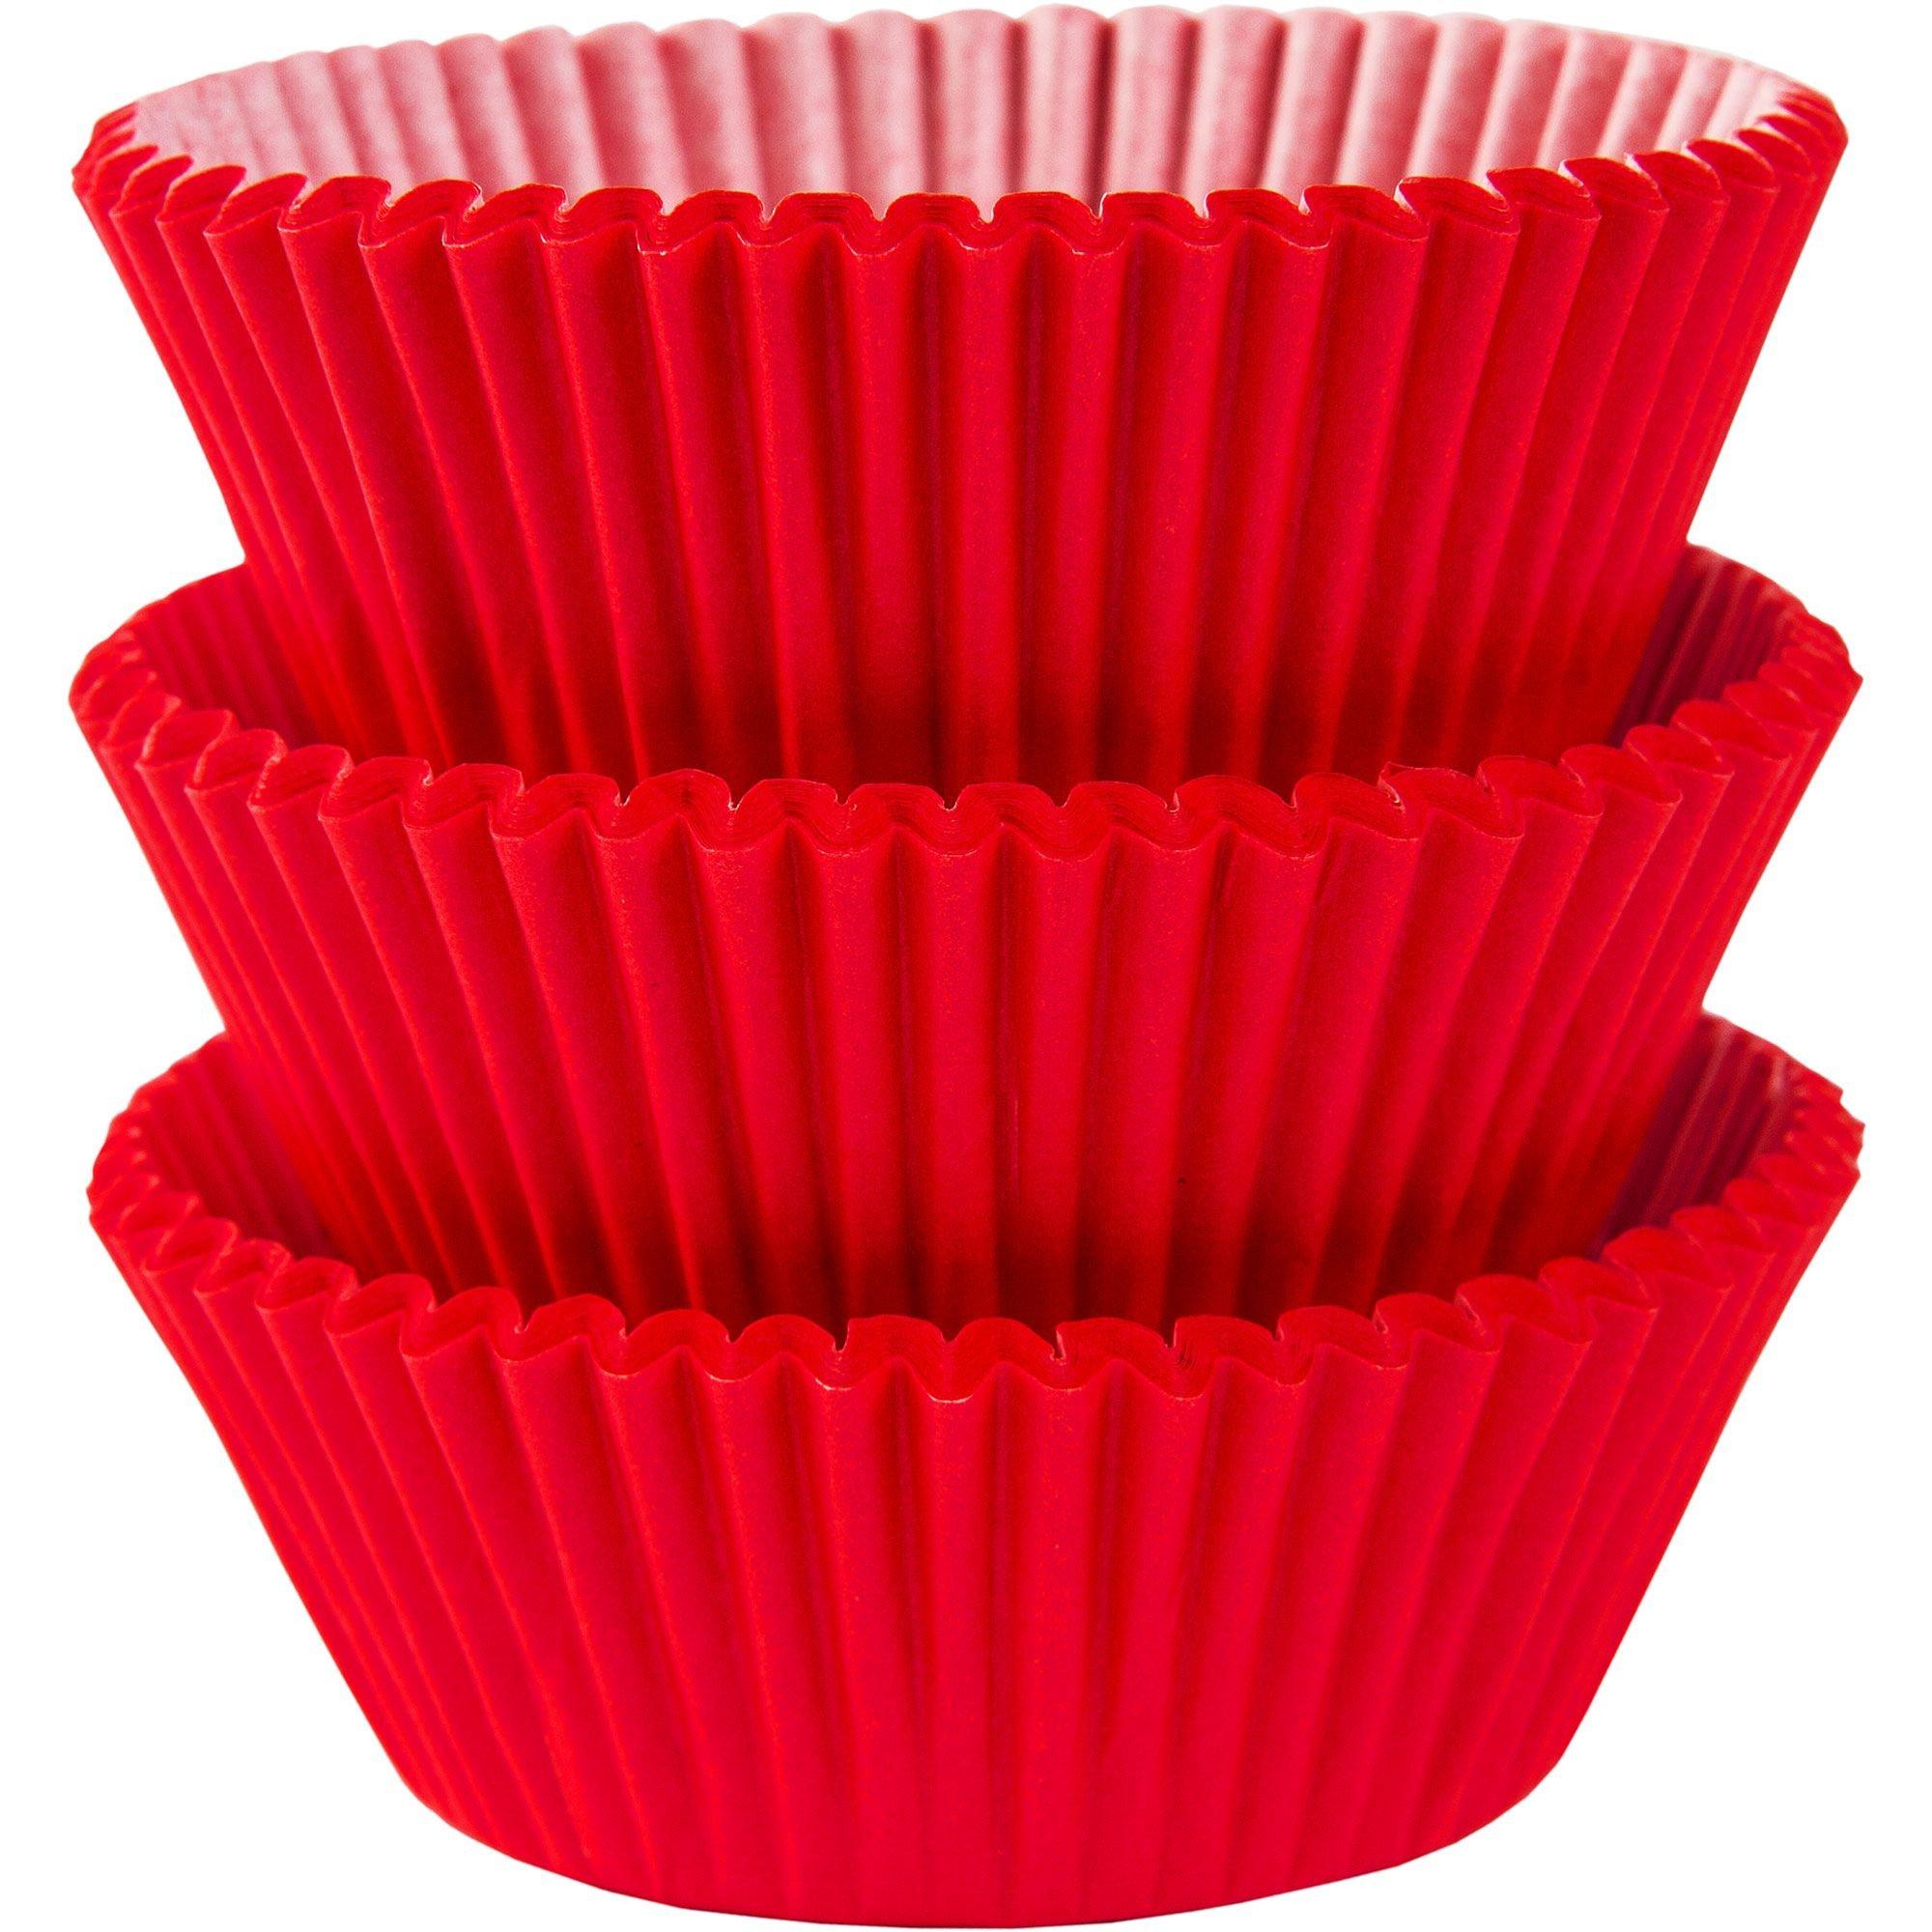 Jumbo Red Cupcake Liner, 20 ct.